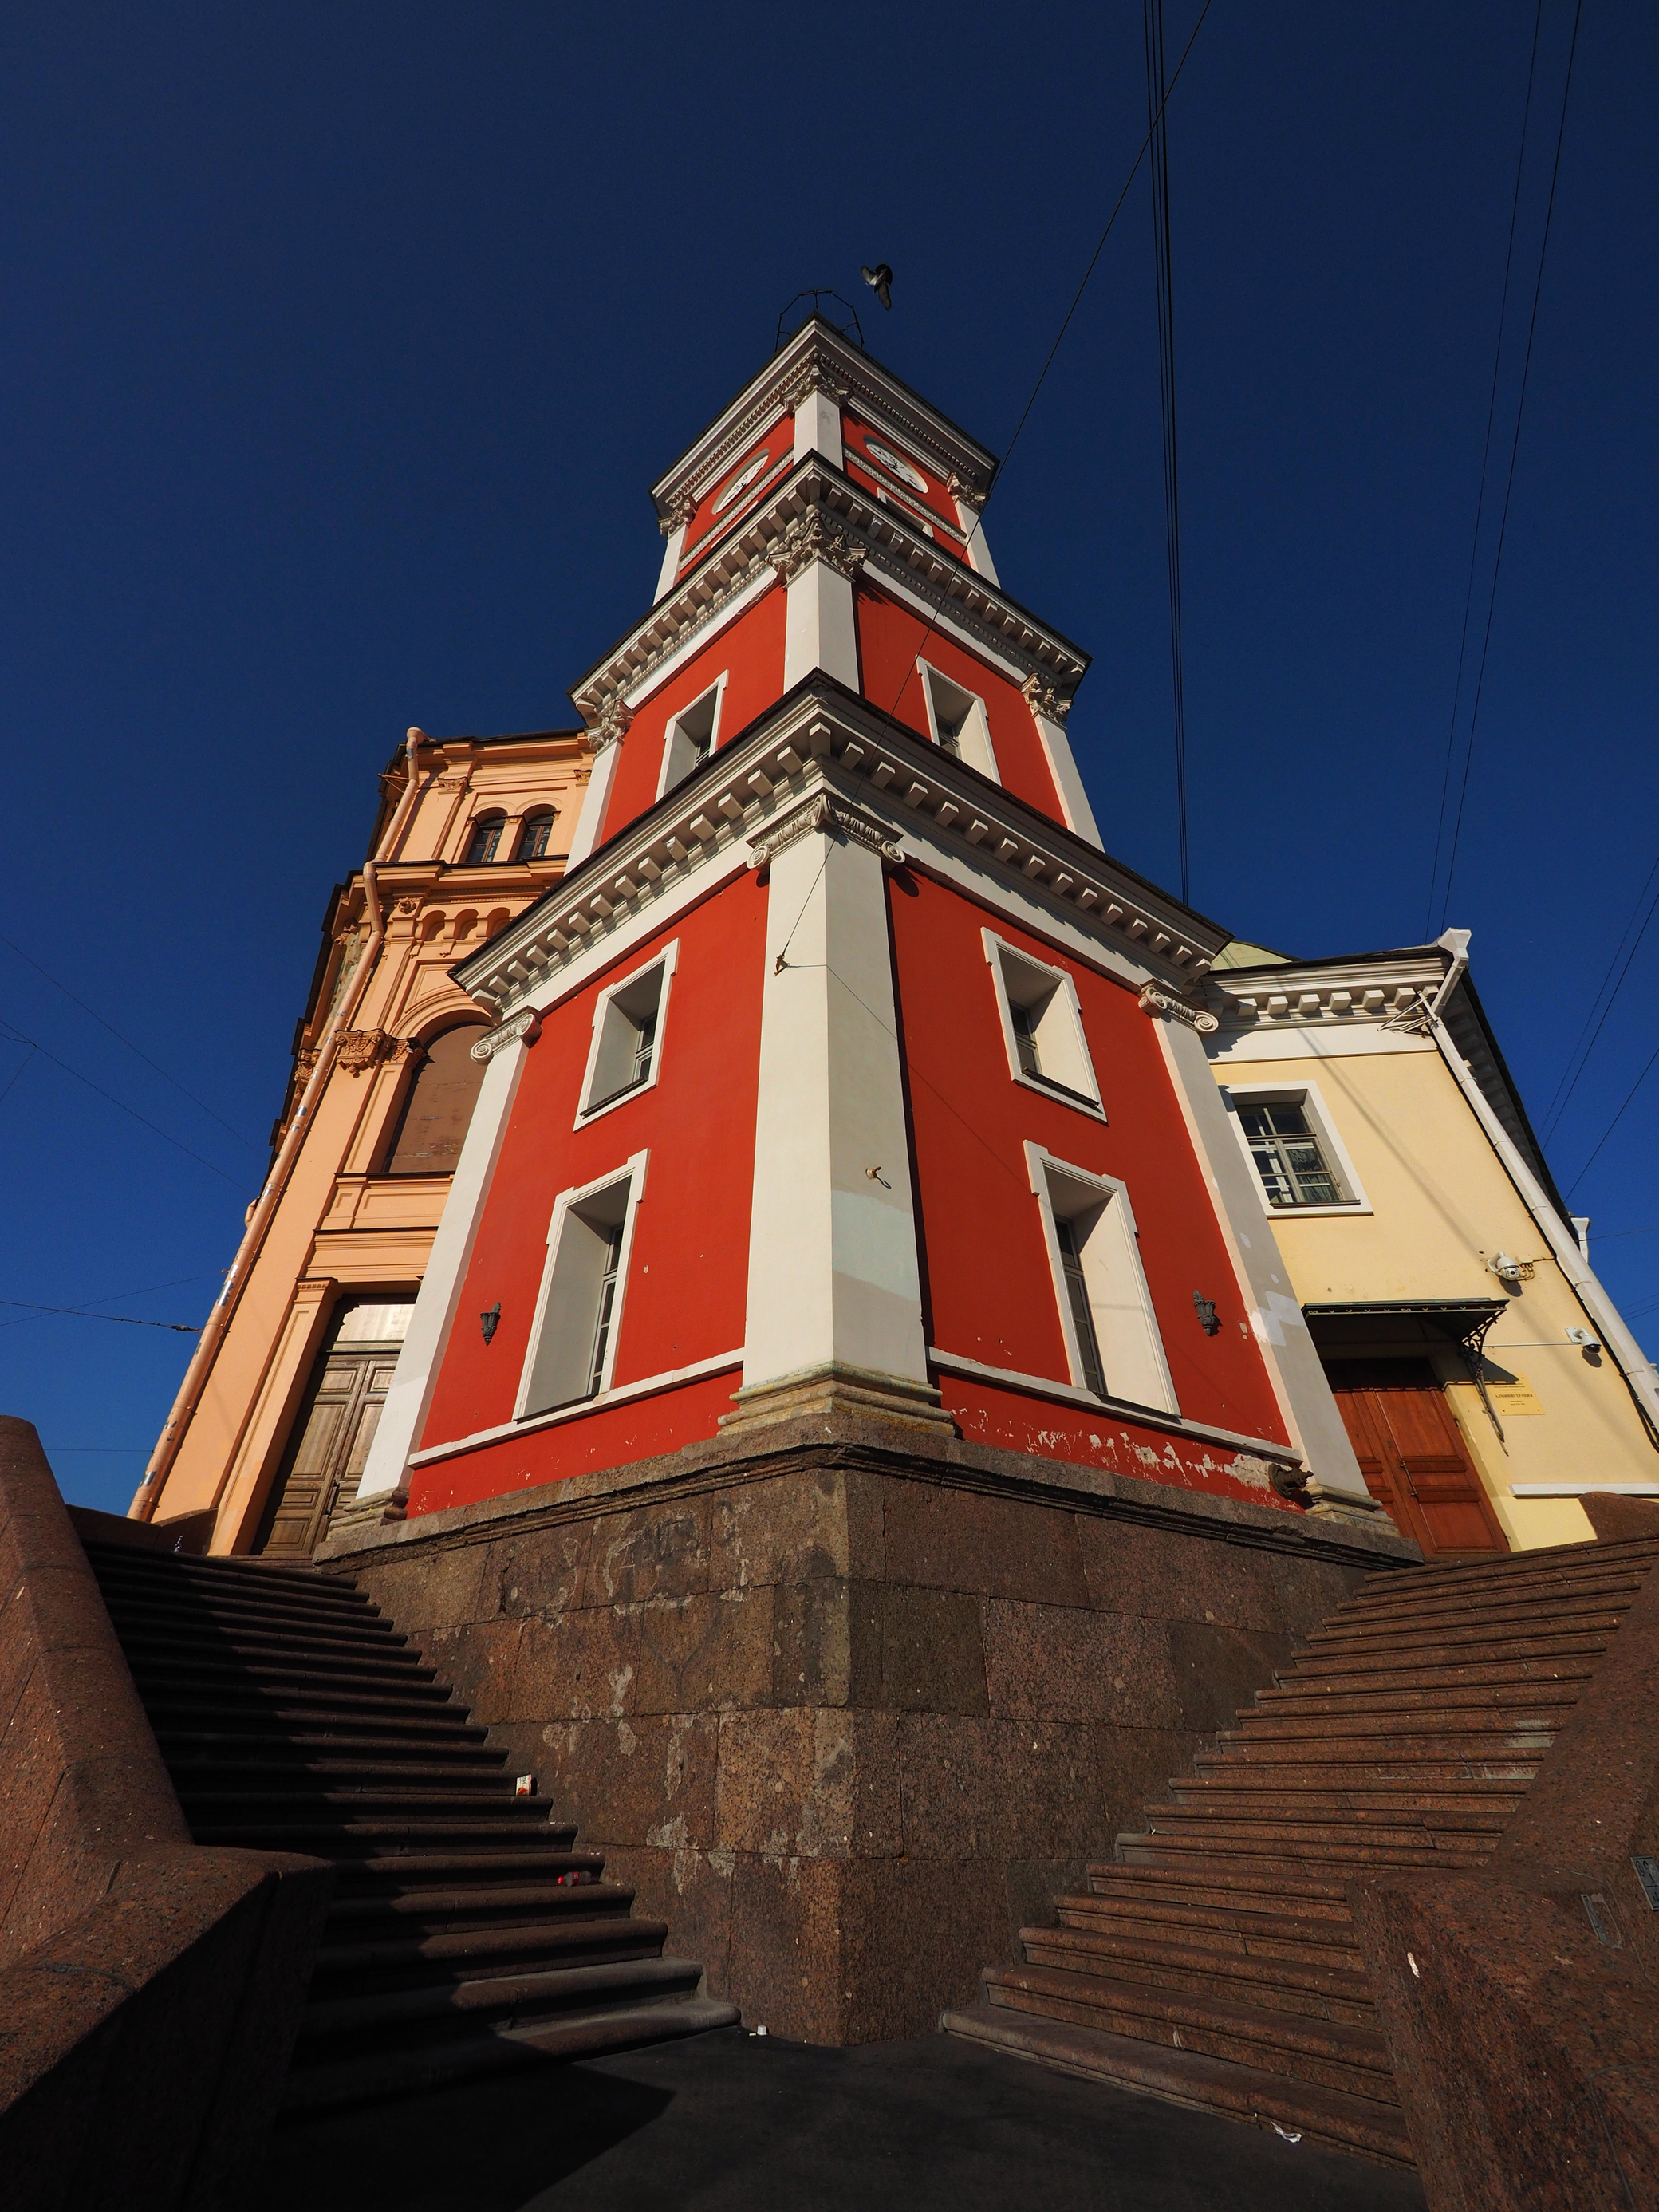 Башня на Невском